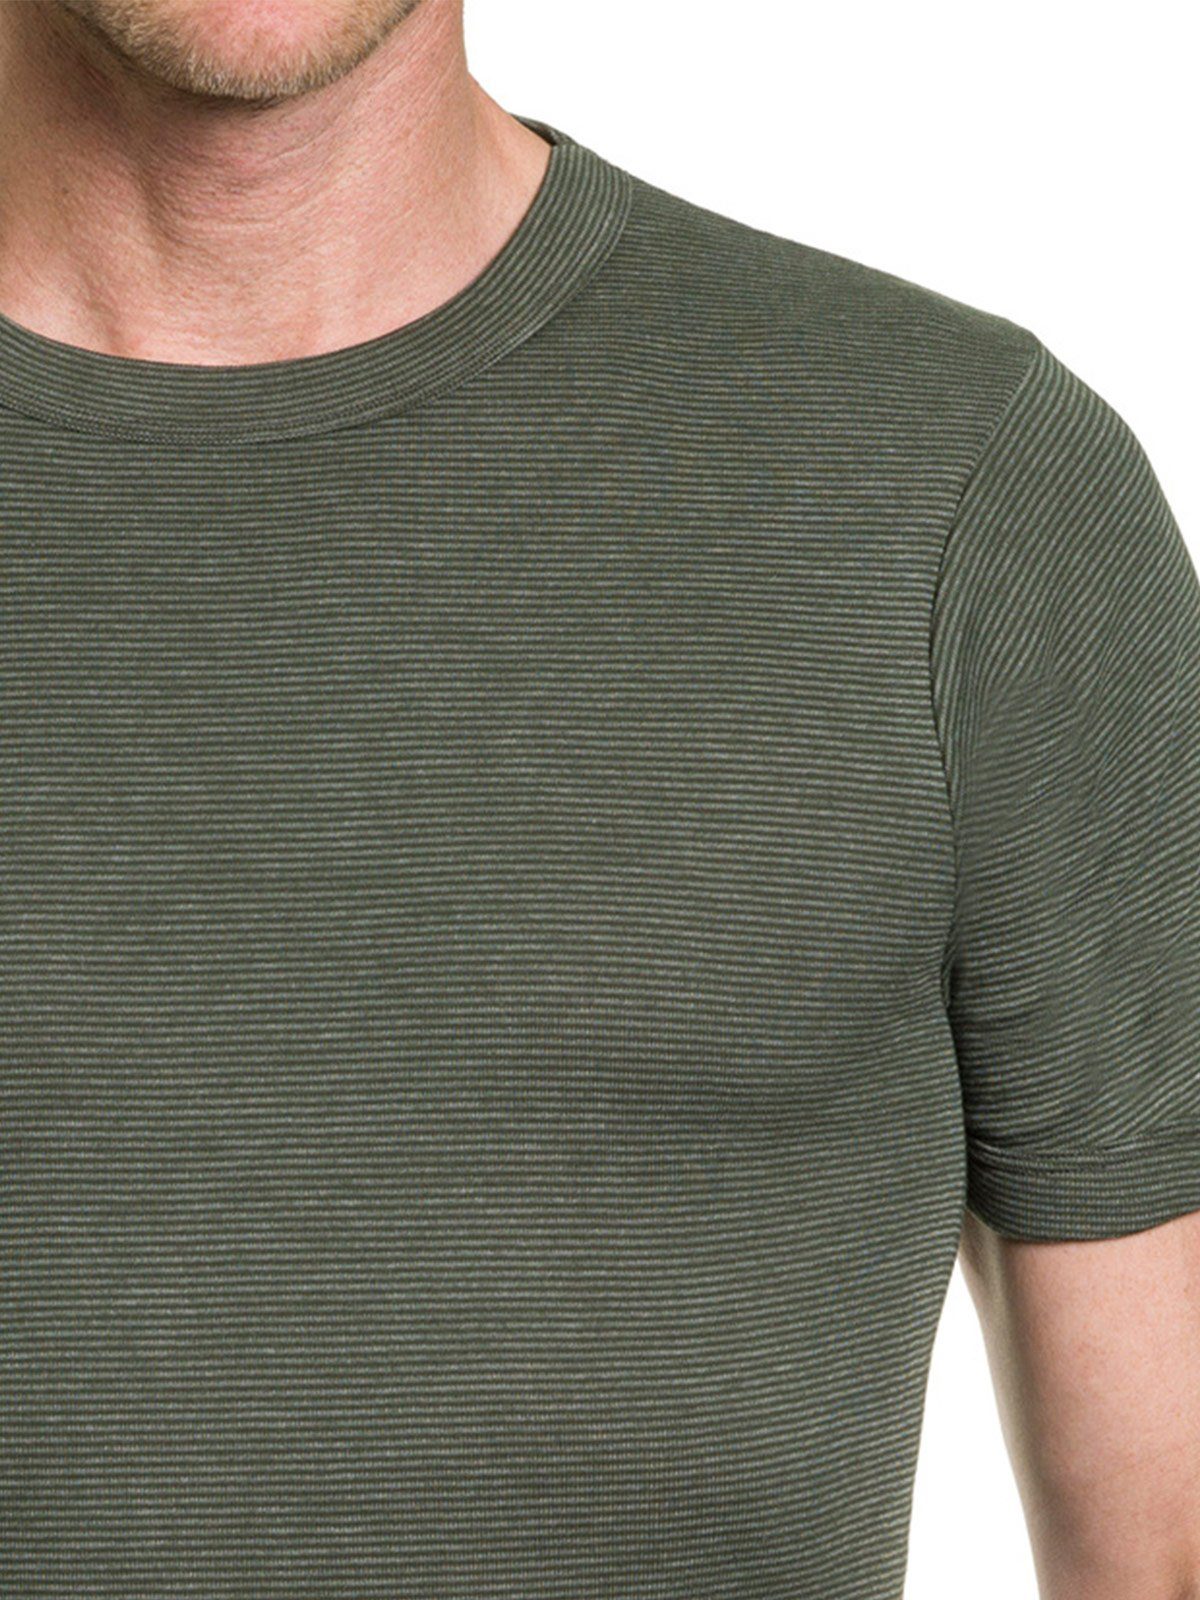 KUMPF Unterziehshirt Herren T-Shirt 1/2 Materialmix (Stück, Arm Klimaflausch 1-St)